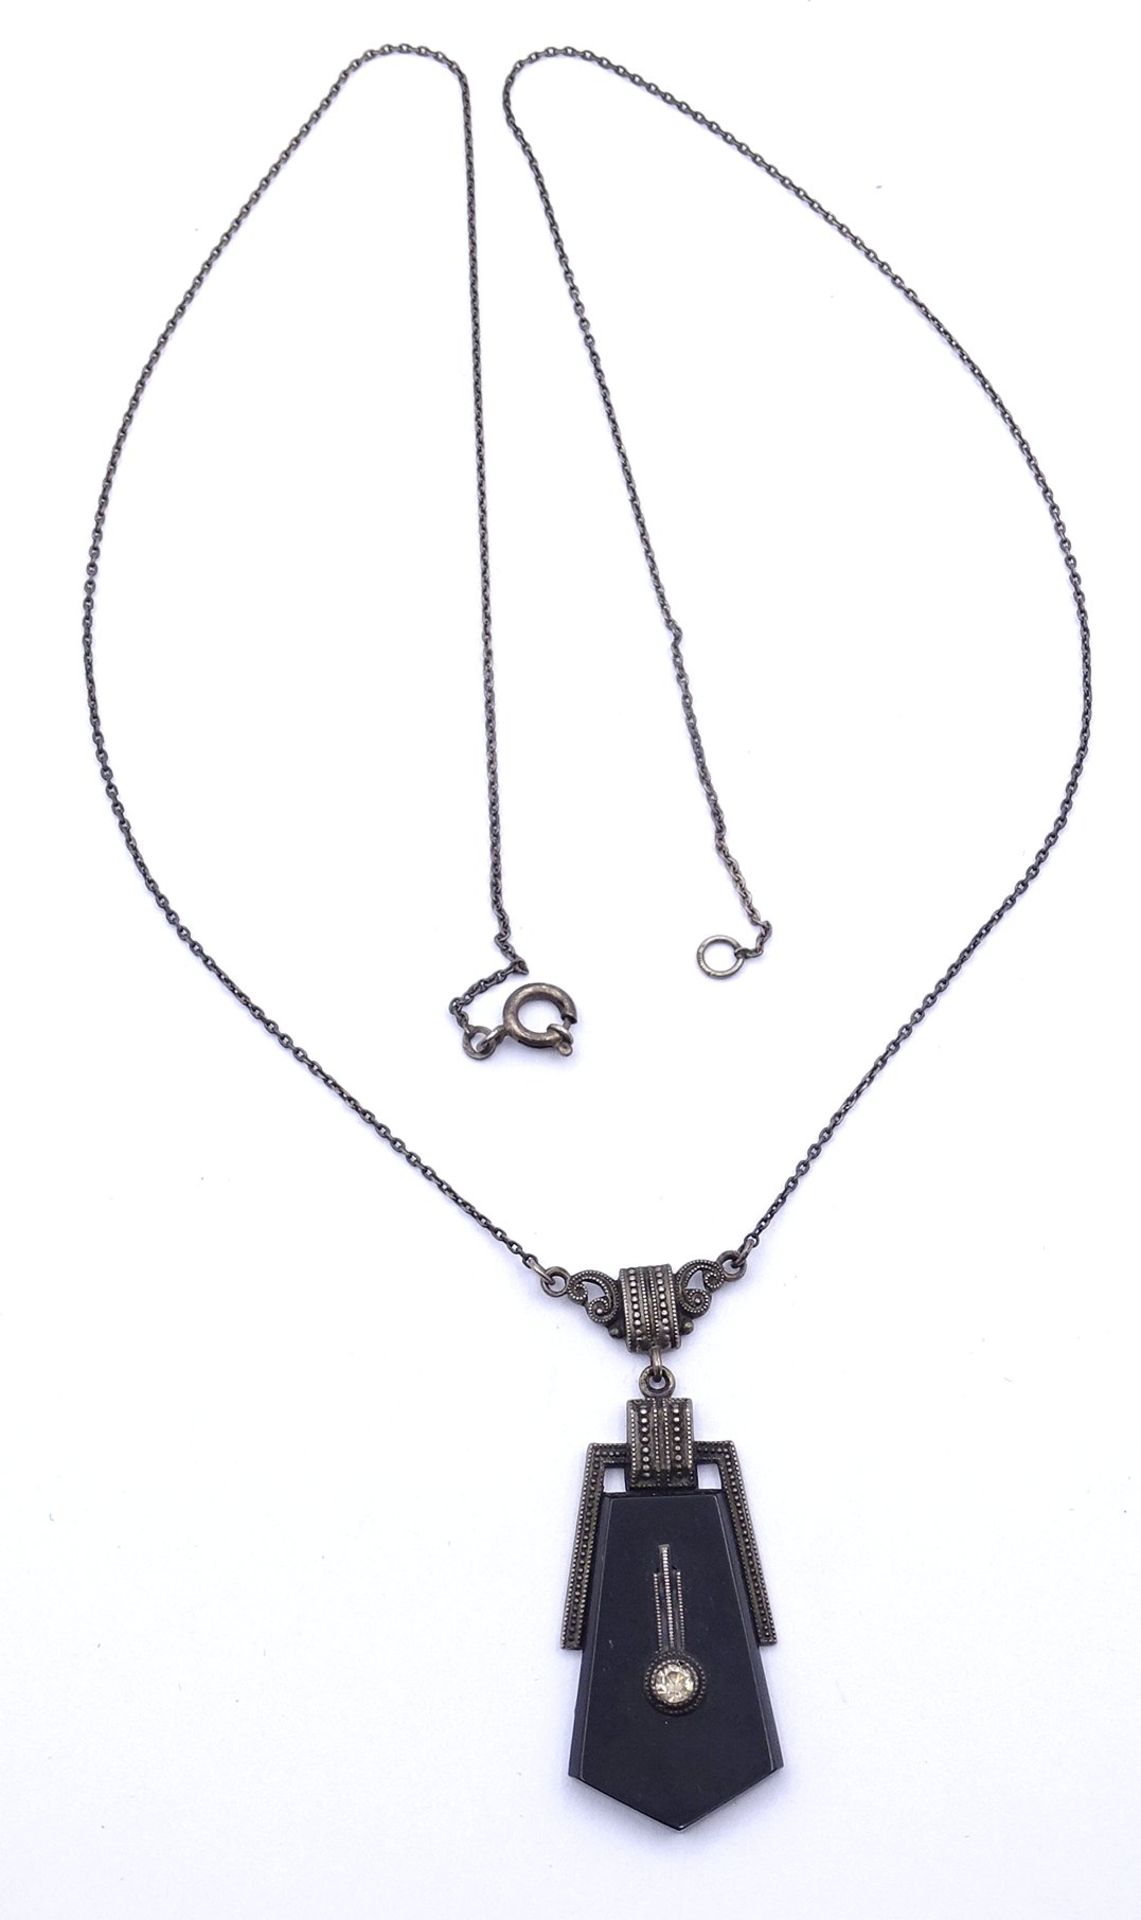 Altes Silber Collier 0.830 mit Onyx und Strass, L. 53cm, 6,3g. - Image 4 of 4